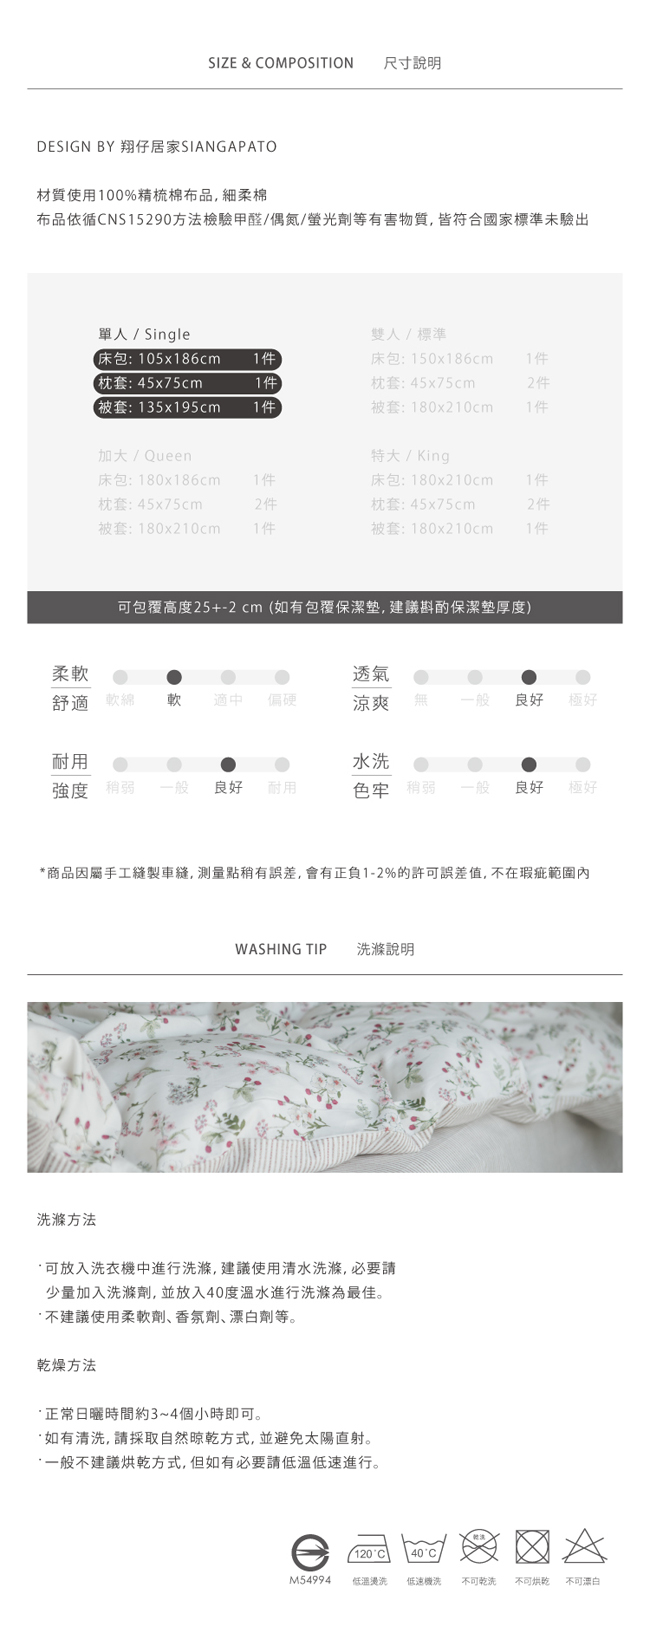 翔仔居家 台灣製 100% 精梳純棉薄被套床包3件組 - 單人(散步去)